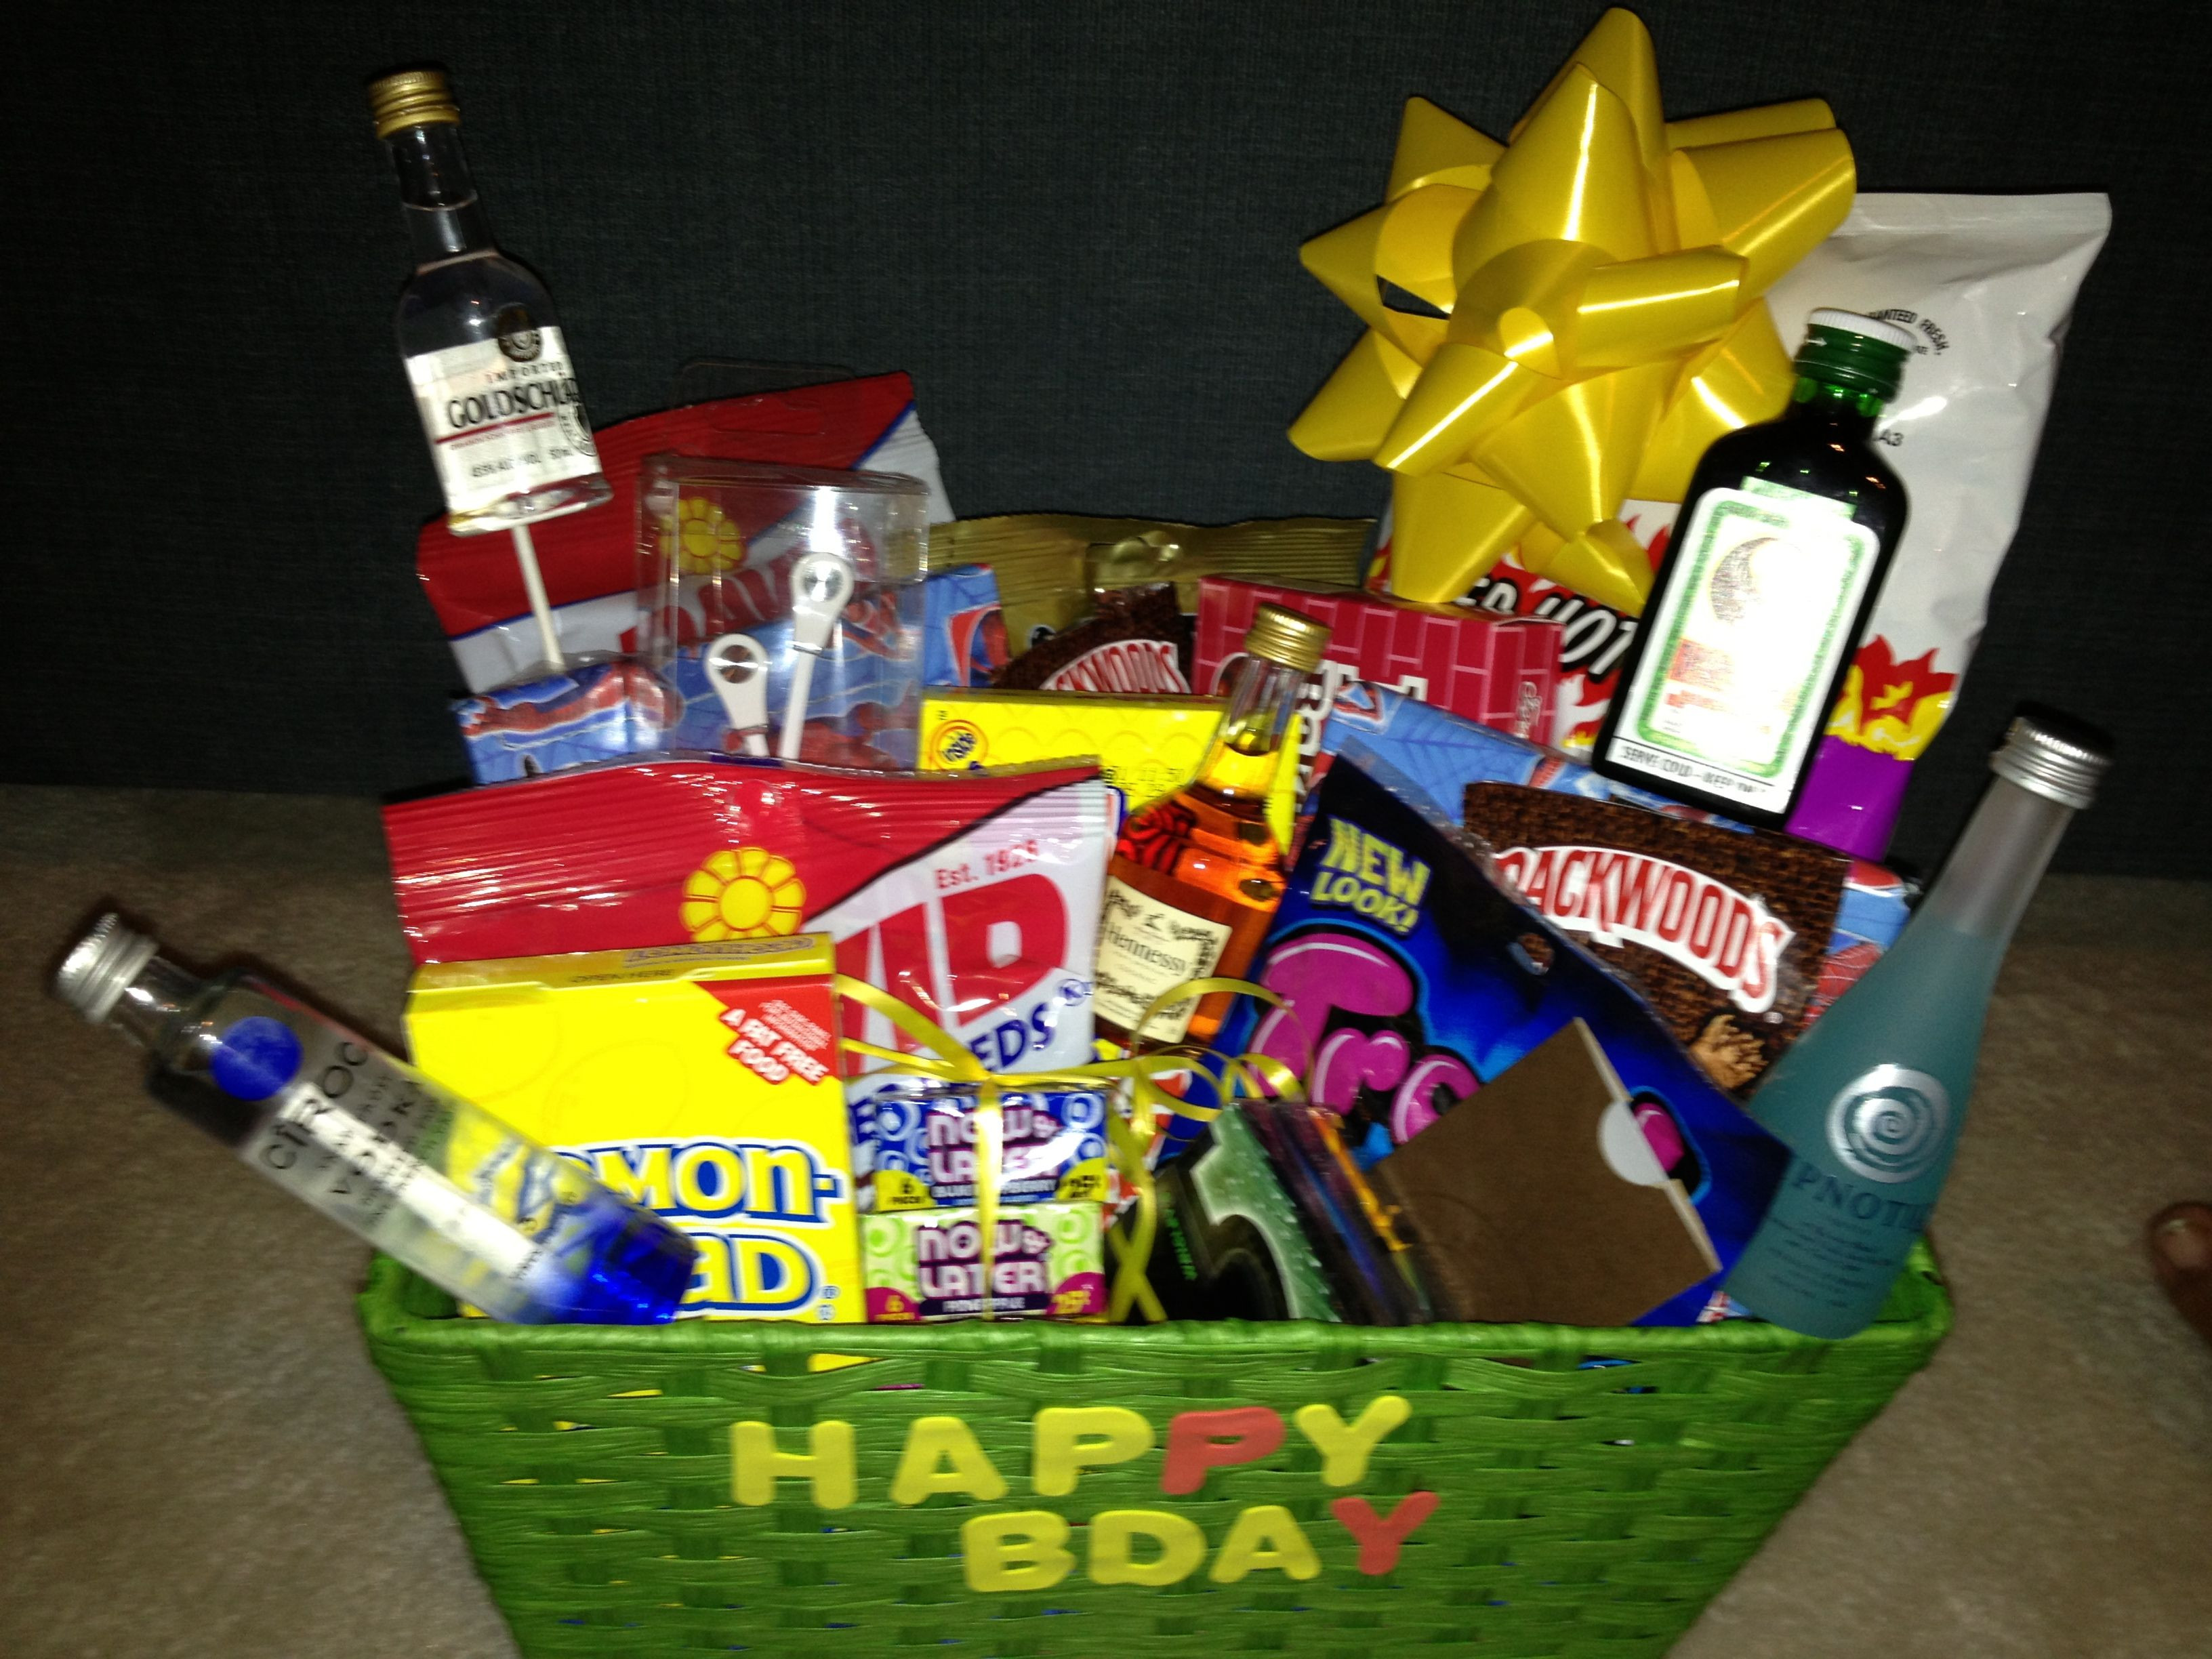 Best ideas about Gift Basket Ideas For Boyfriend
. Save or Pin Boyfriend birthday t basket t ideas Now.